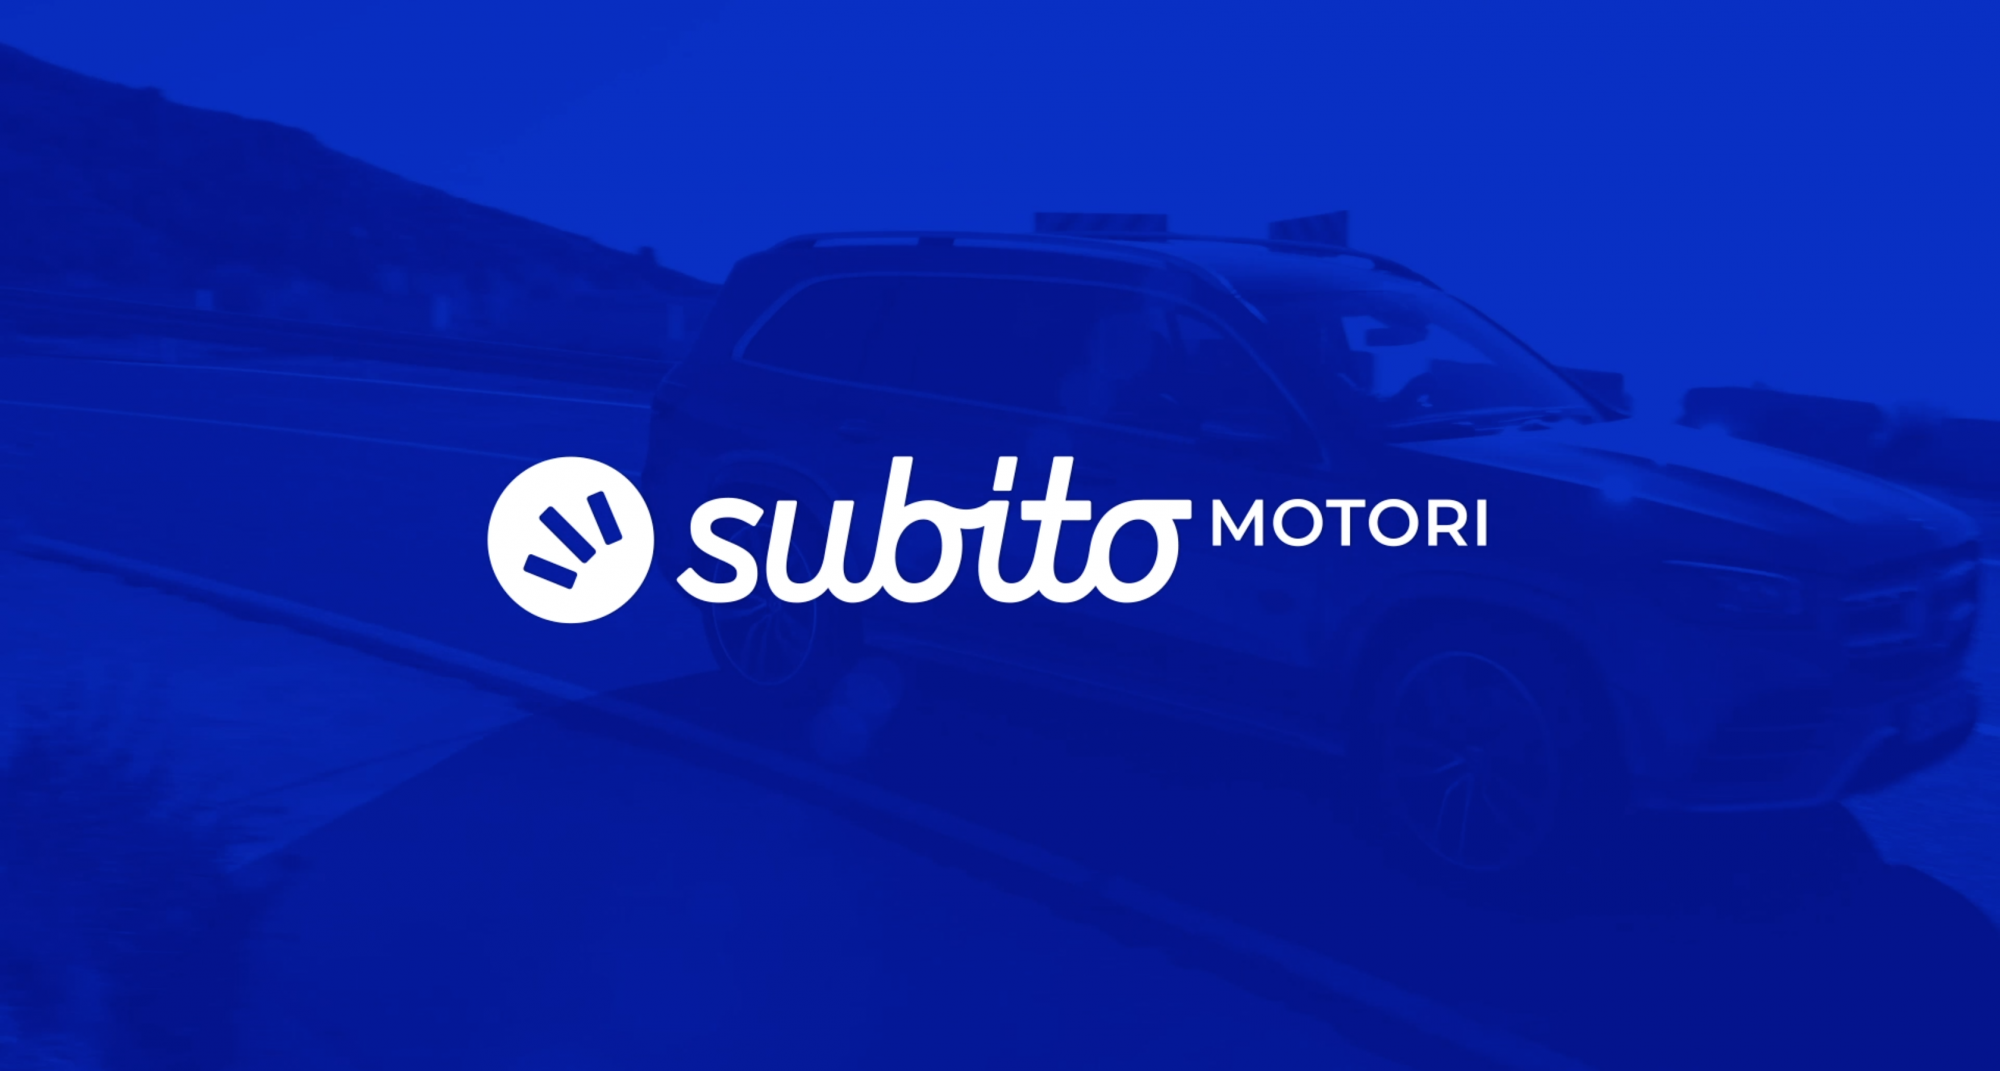 Nasce Subito Motori, il restyling del leader nella compravendita online thumbnail